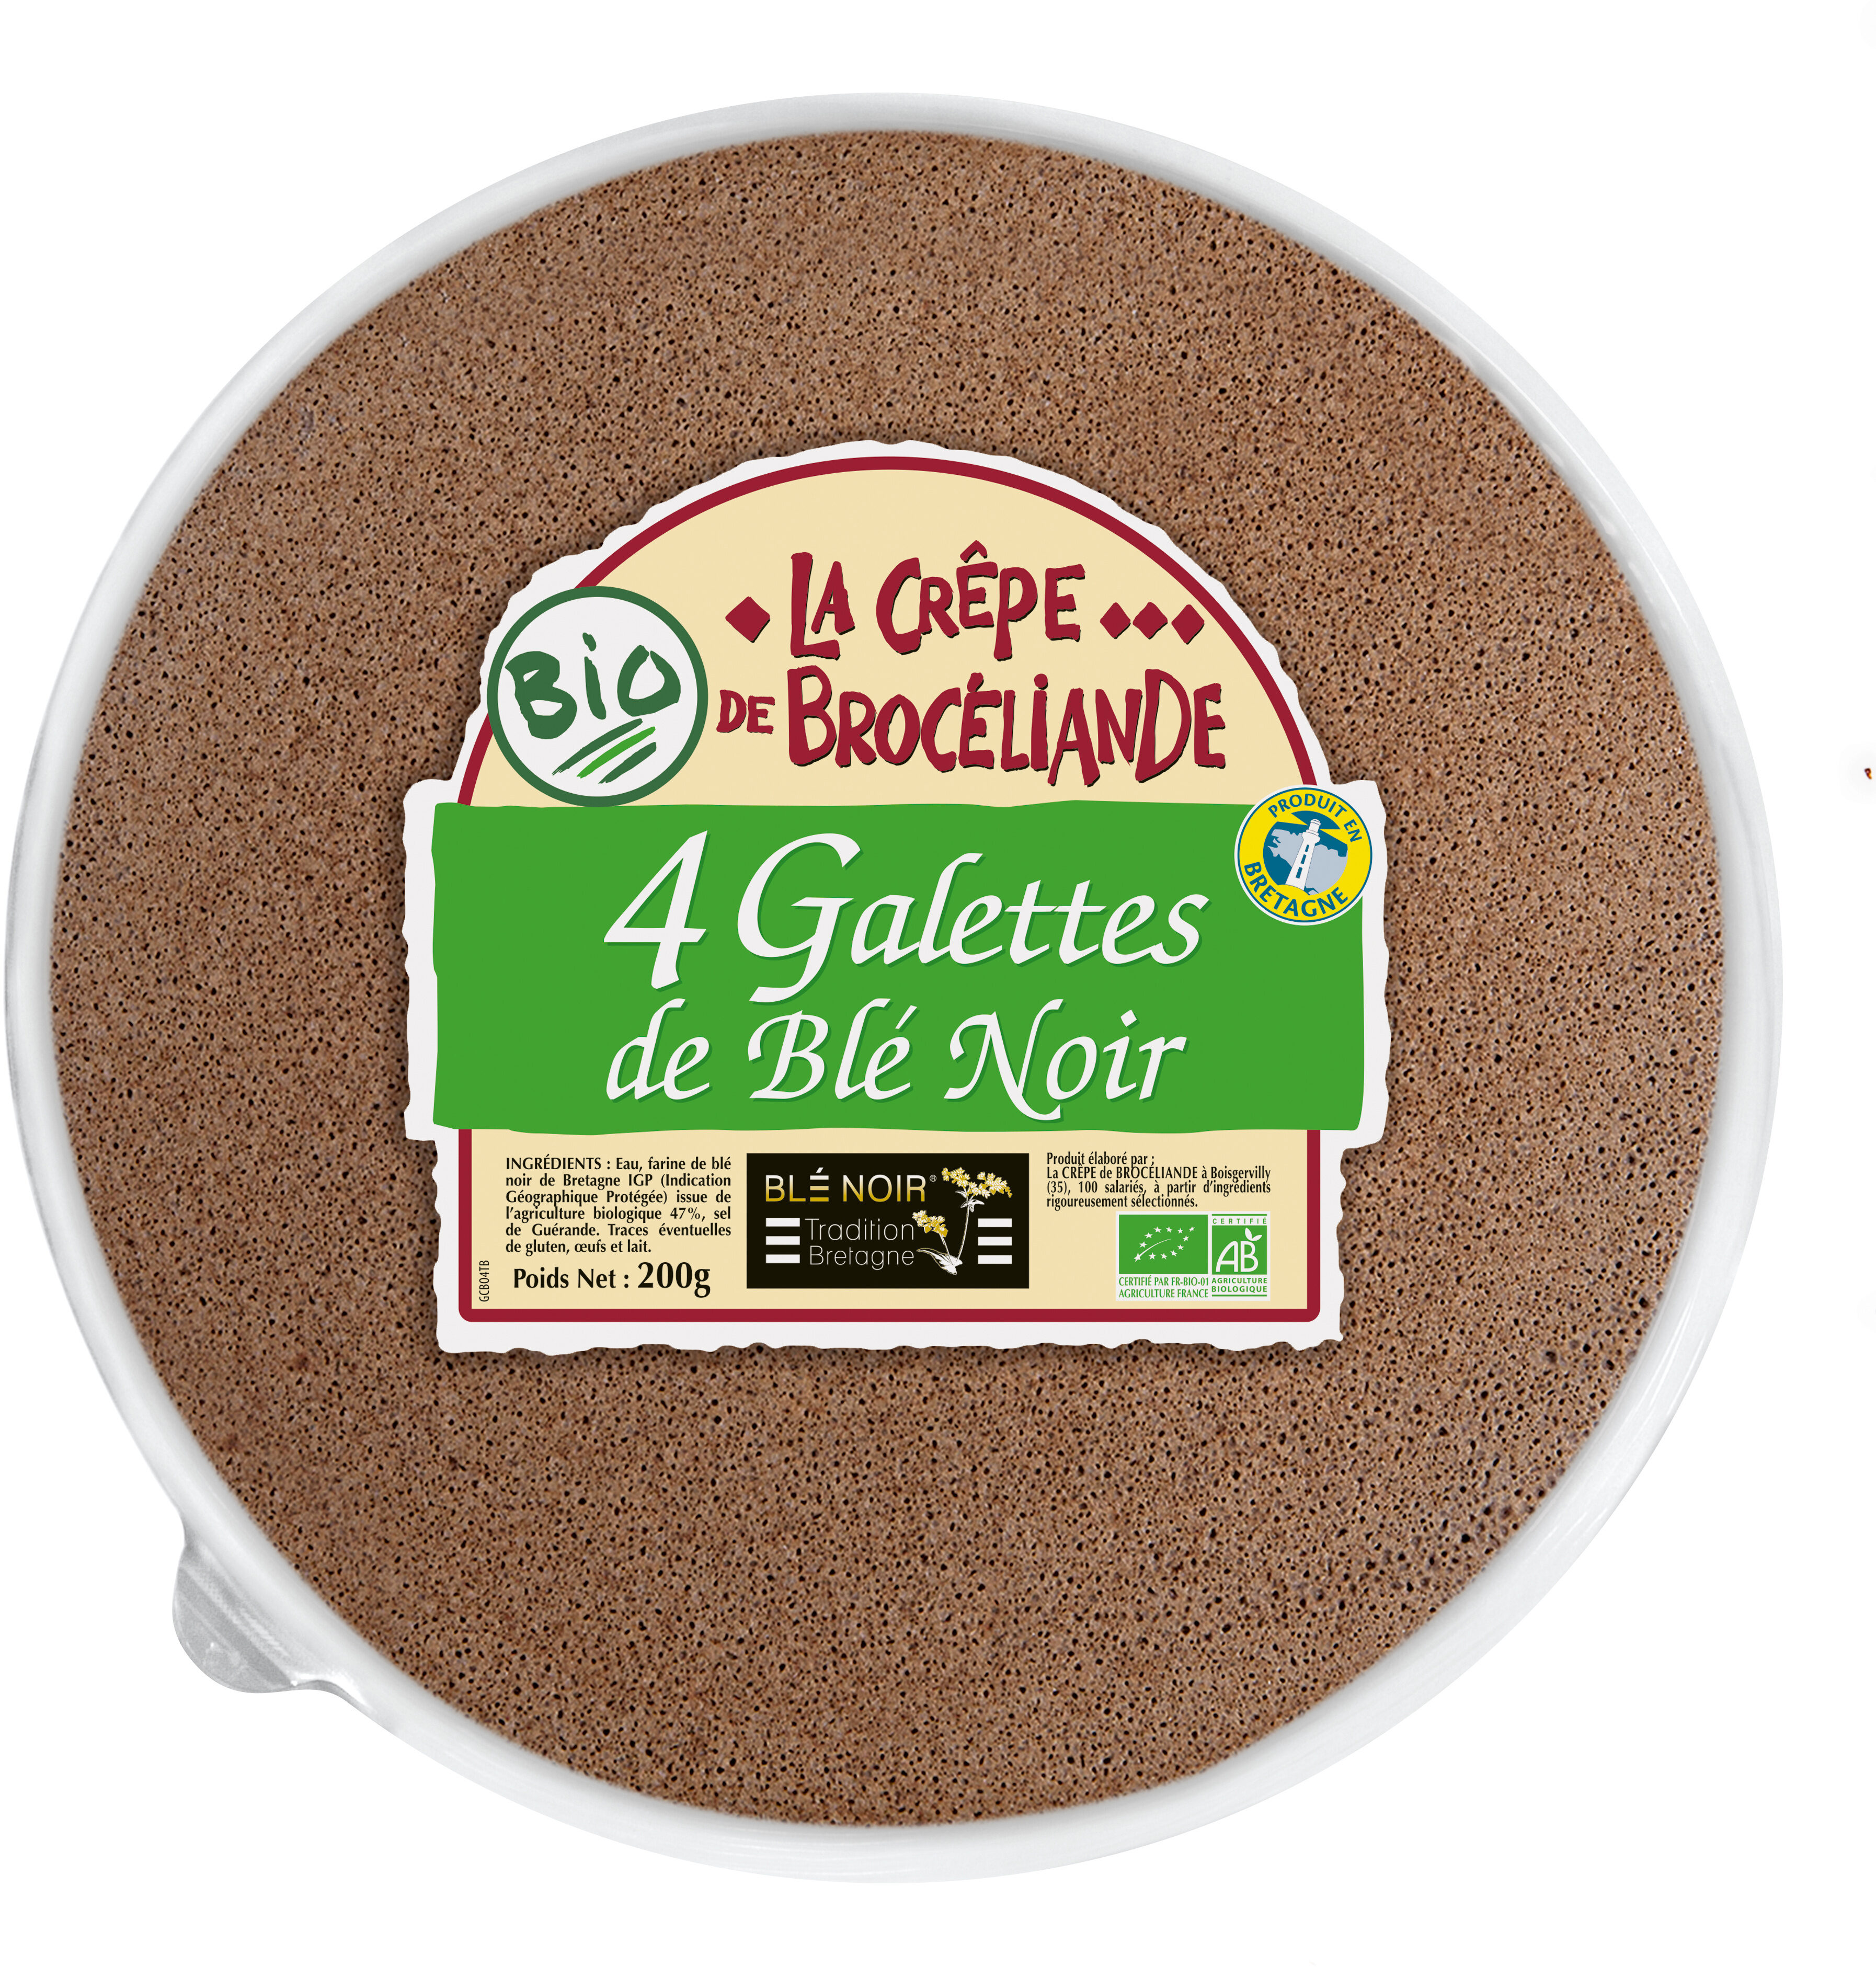 4 Galettes de Blé Noir Biologiques Tradition Bretagne en barquette - Product - fr